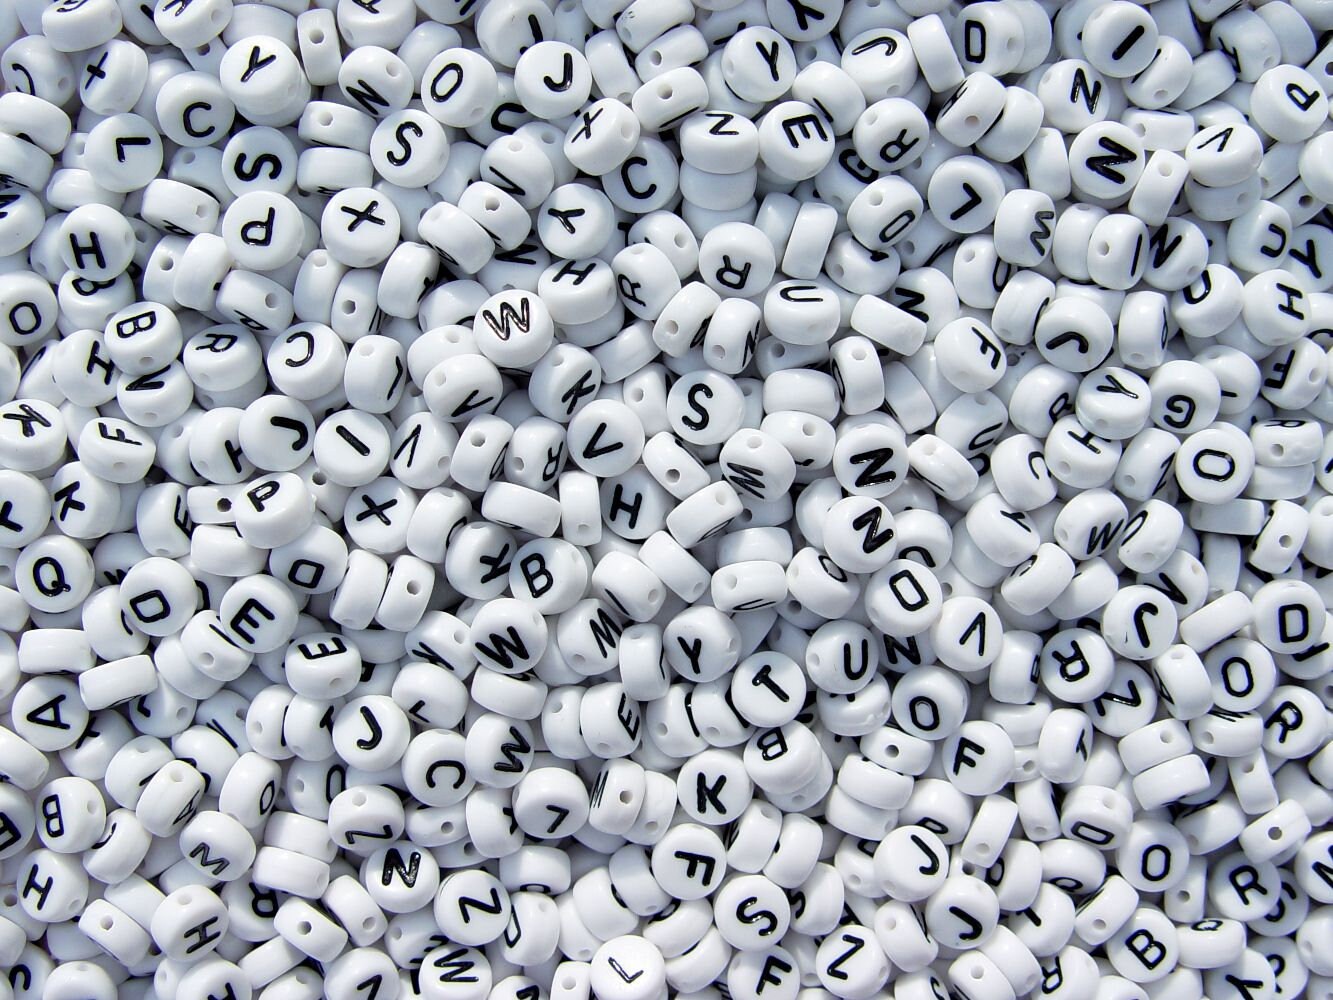 500PCS White Letter Beads for Bracelets Making, India